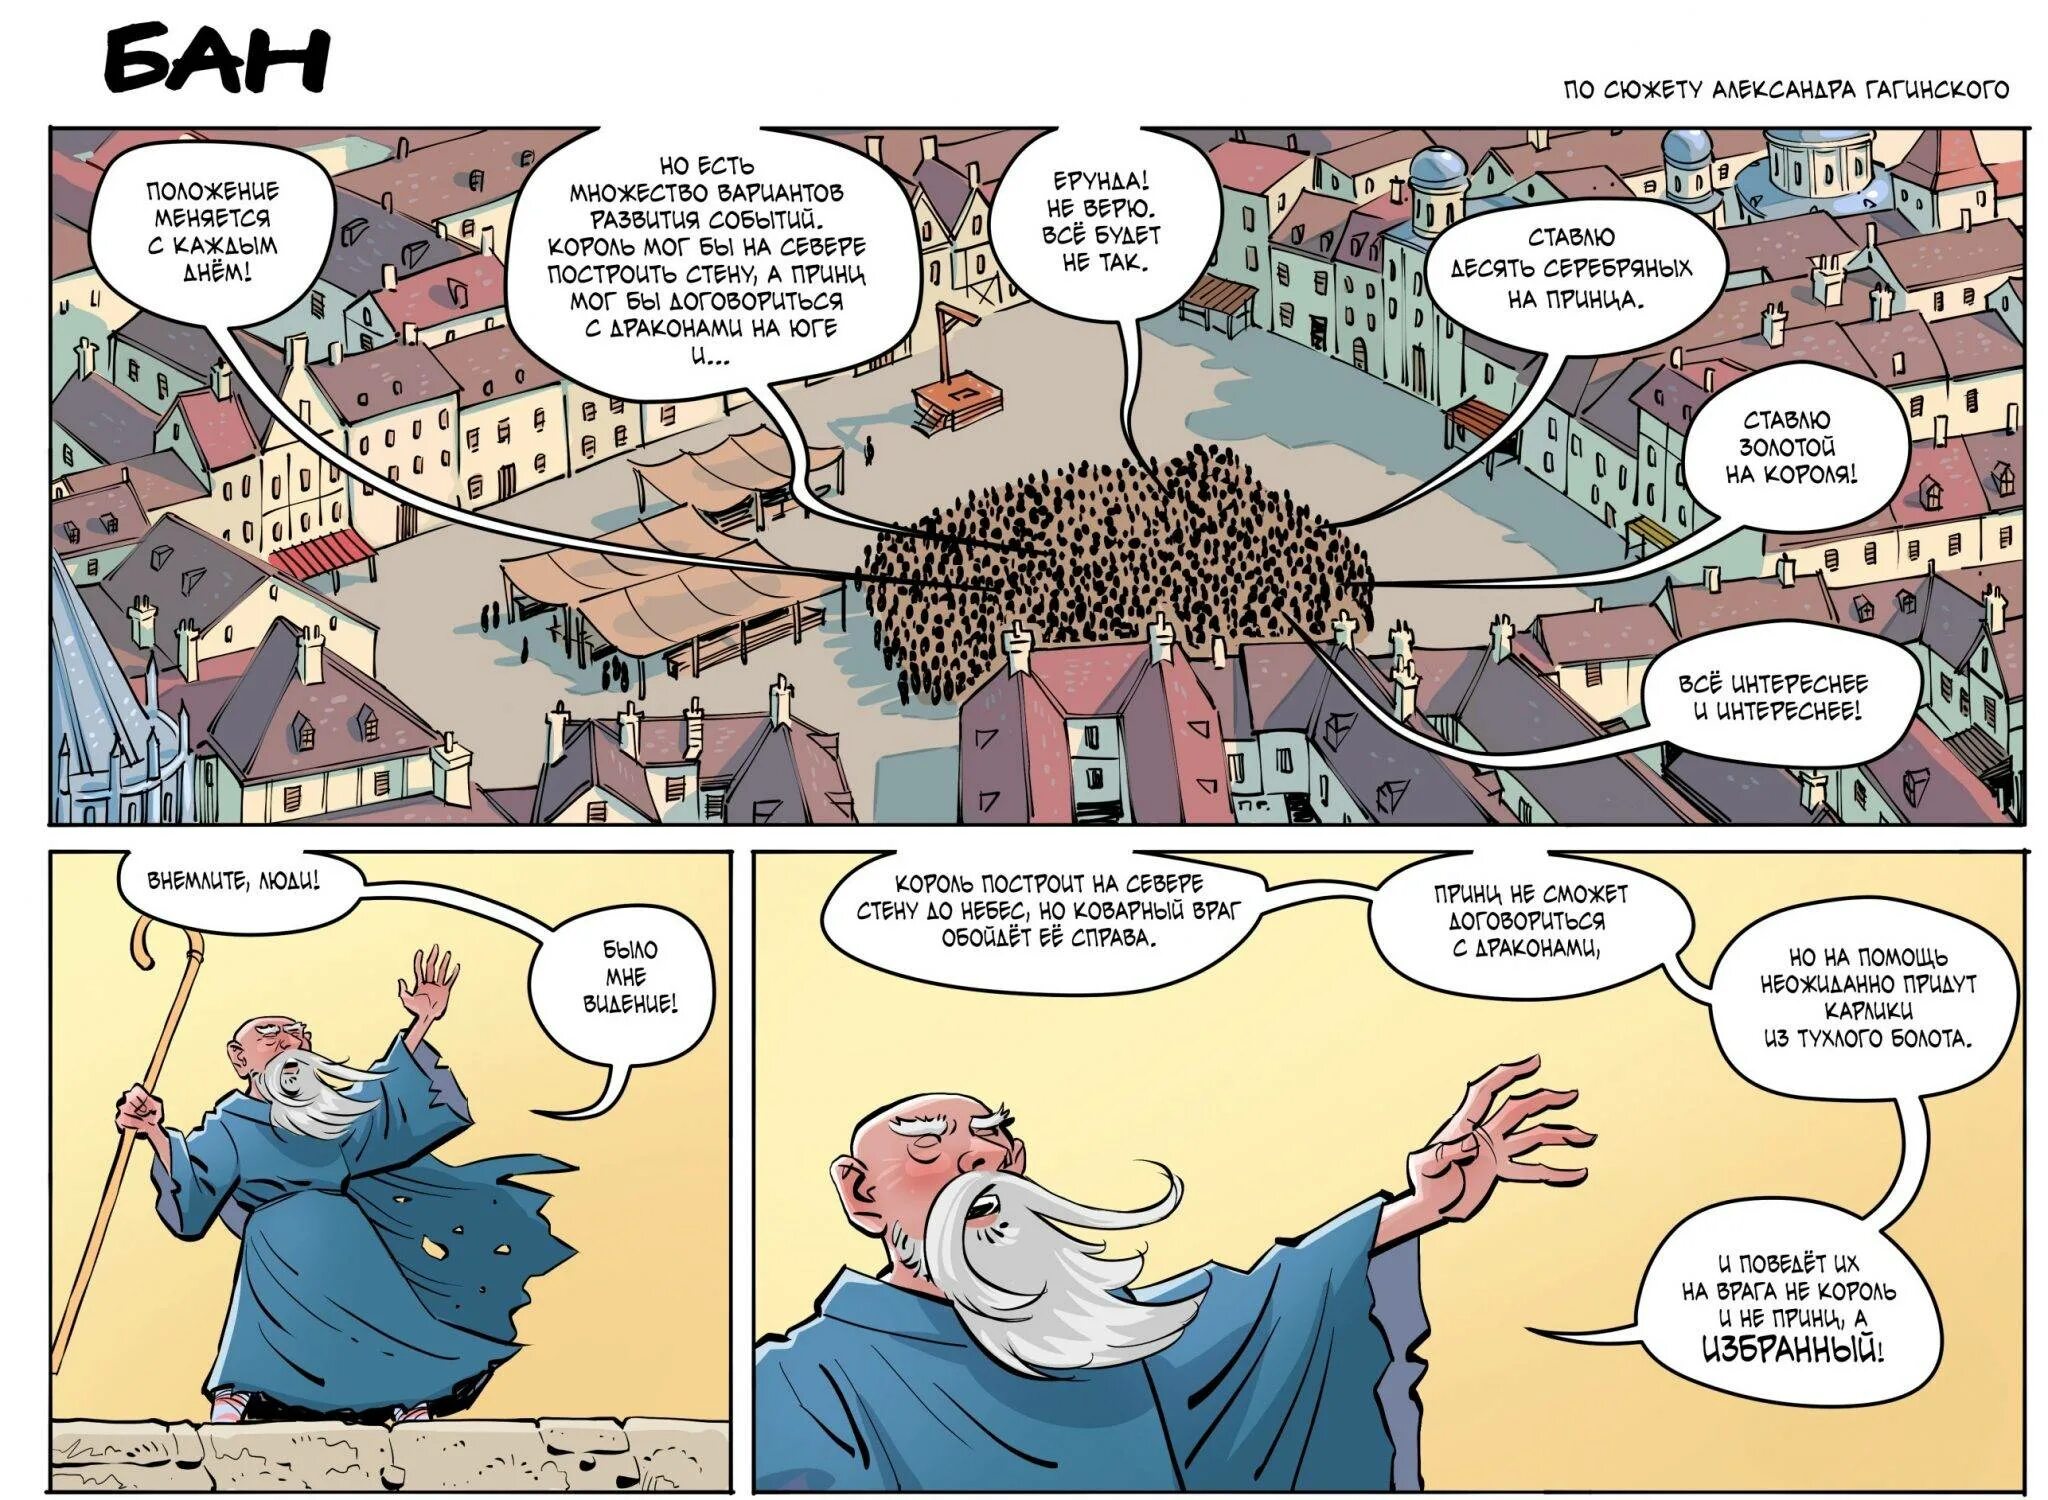 Комикс бан бан. Strong Bana комиксы. Как выглядит комикс. Смешные комиксы про пророка.